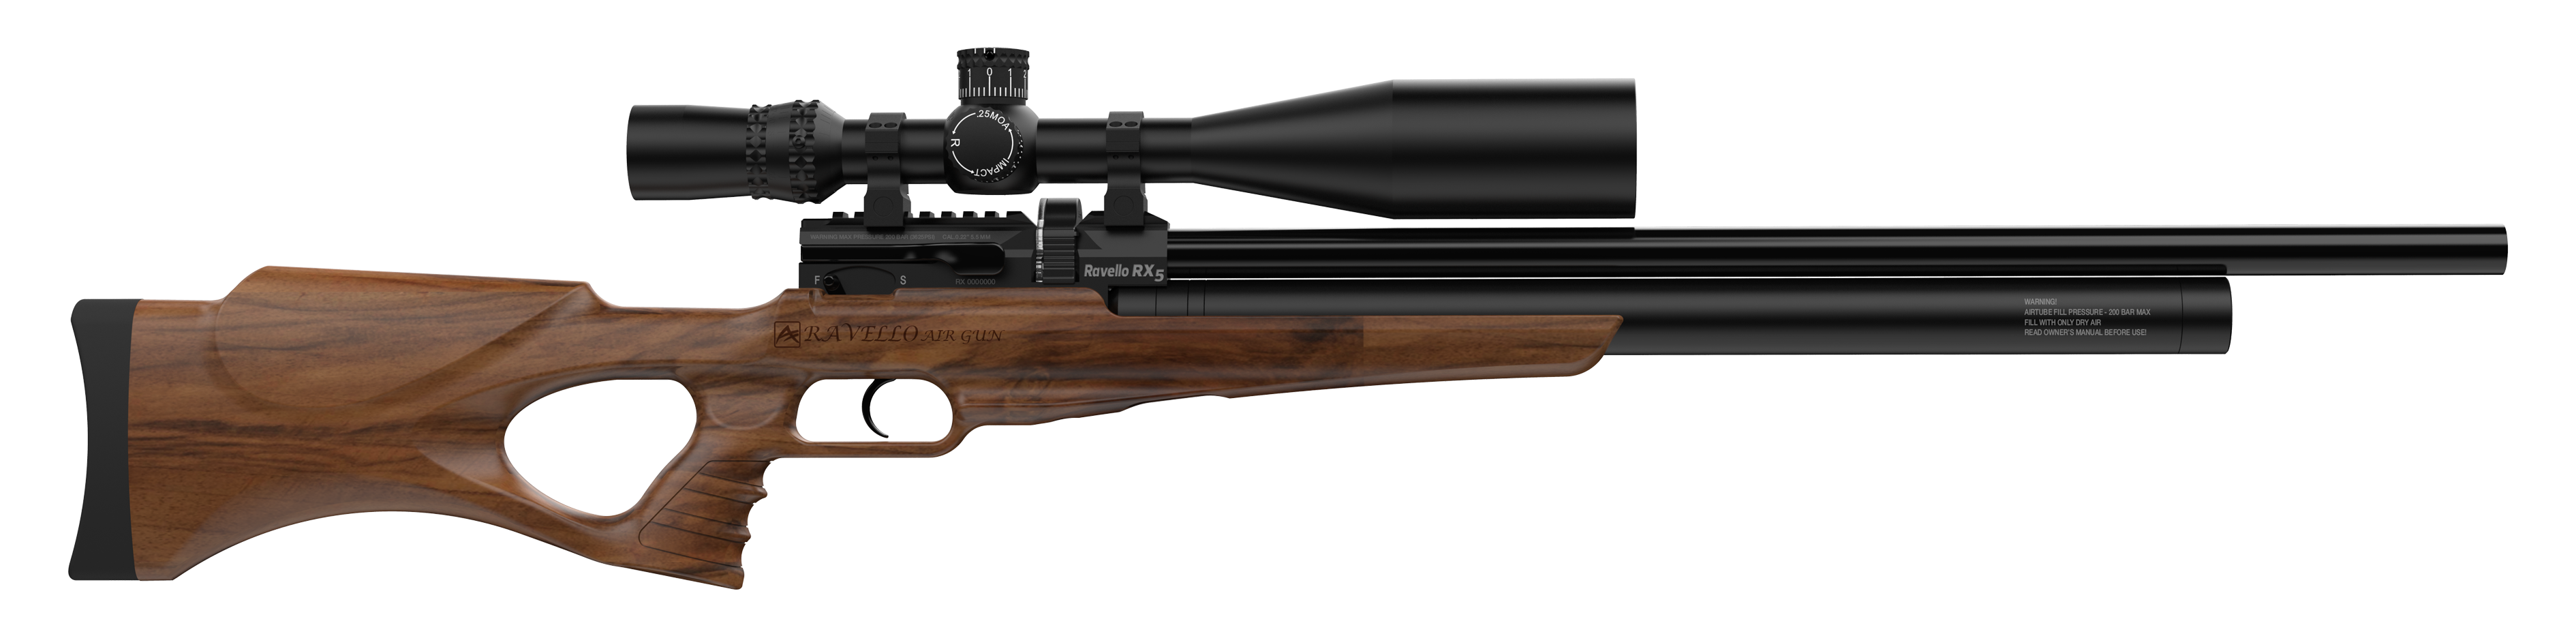 Aselkon Ravello RX5 pcp air rifle